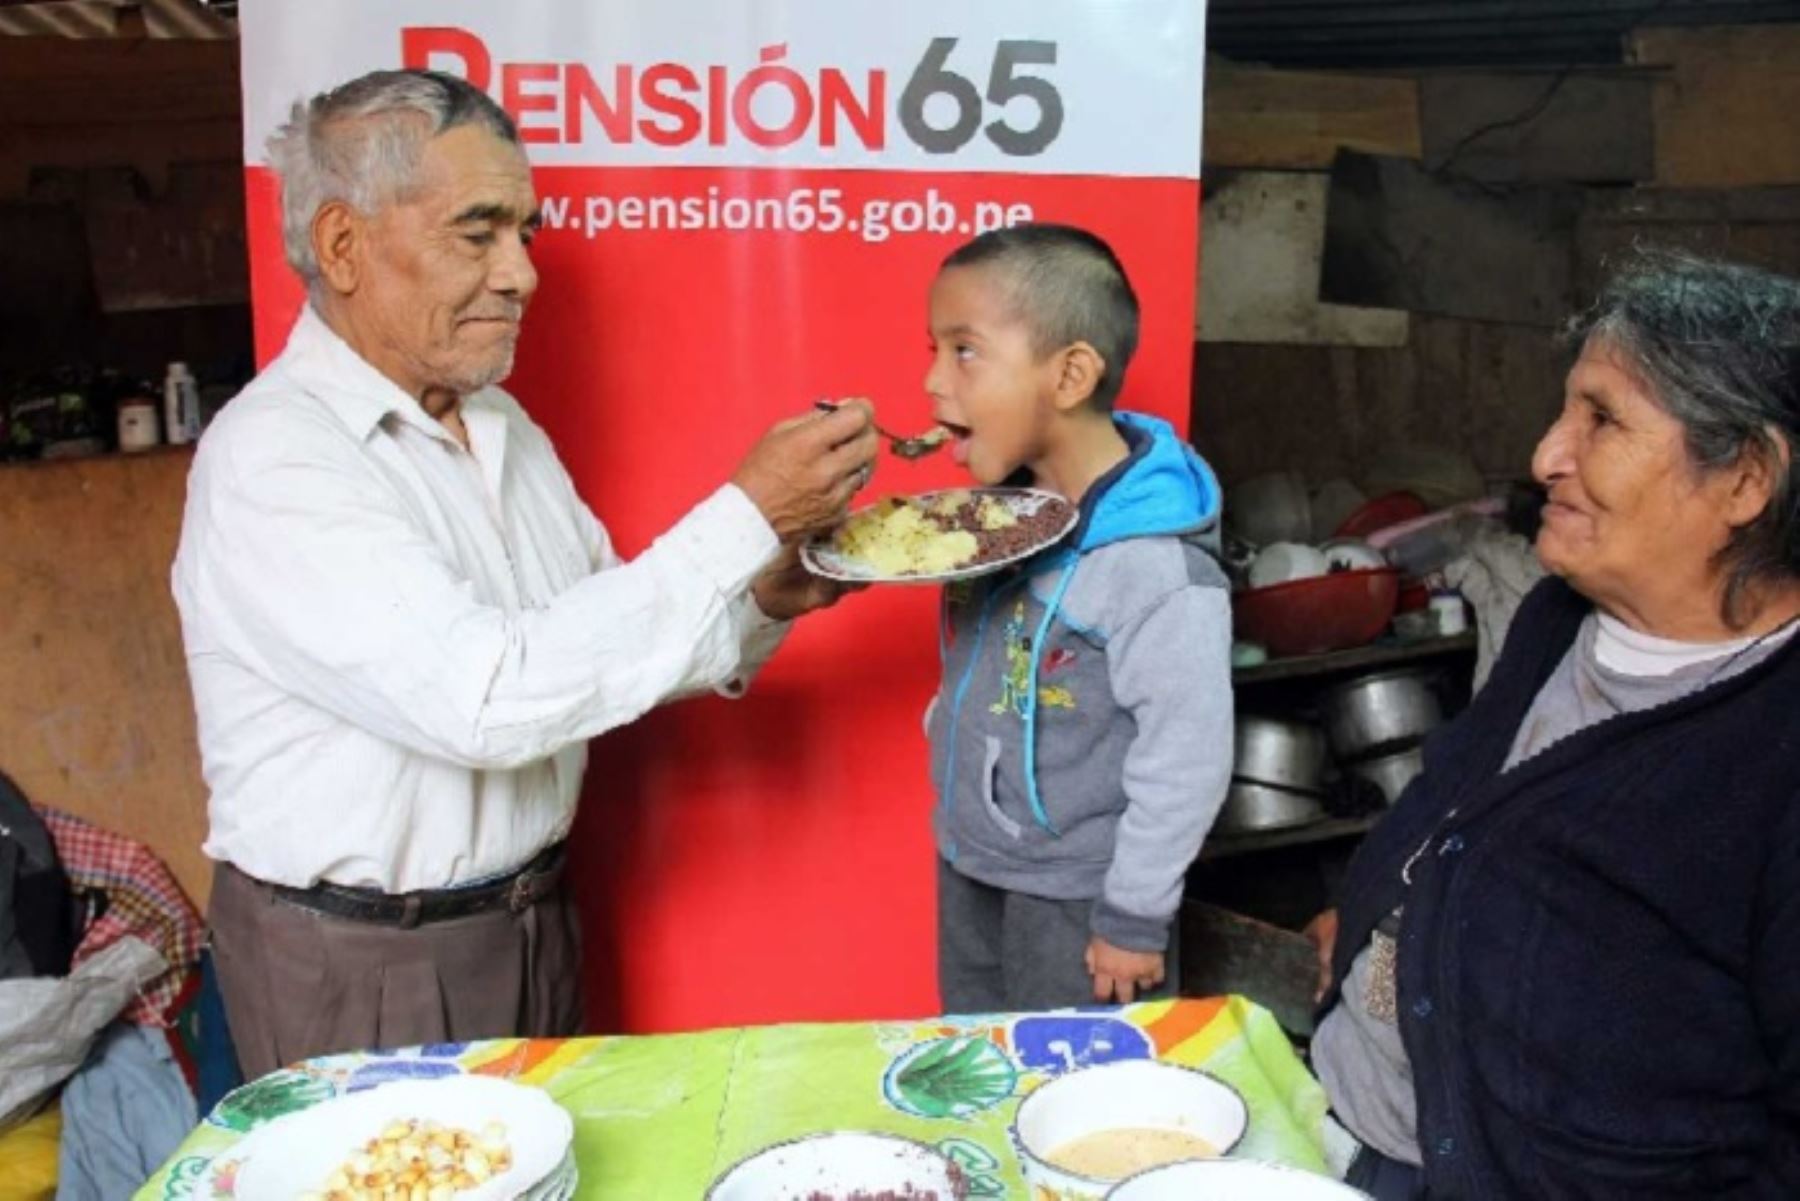 La reforma emprendida el Programa Nacional de Asistencia Solidaria (Pensión 65) del Ministerio de Desarrollo e Inclusión Social (Midis), centrada en el envejecimiento con dignidad, fue expuesta en el Seminario Internacional Vejez, Ruralidad y Servicios Sociales que realzó en Santiago de Chile. ANDINA/Difusión